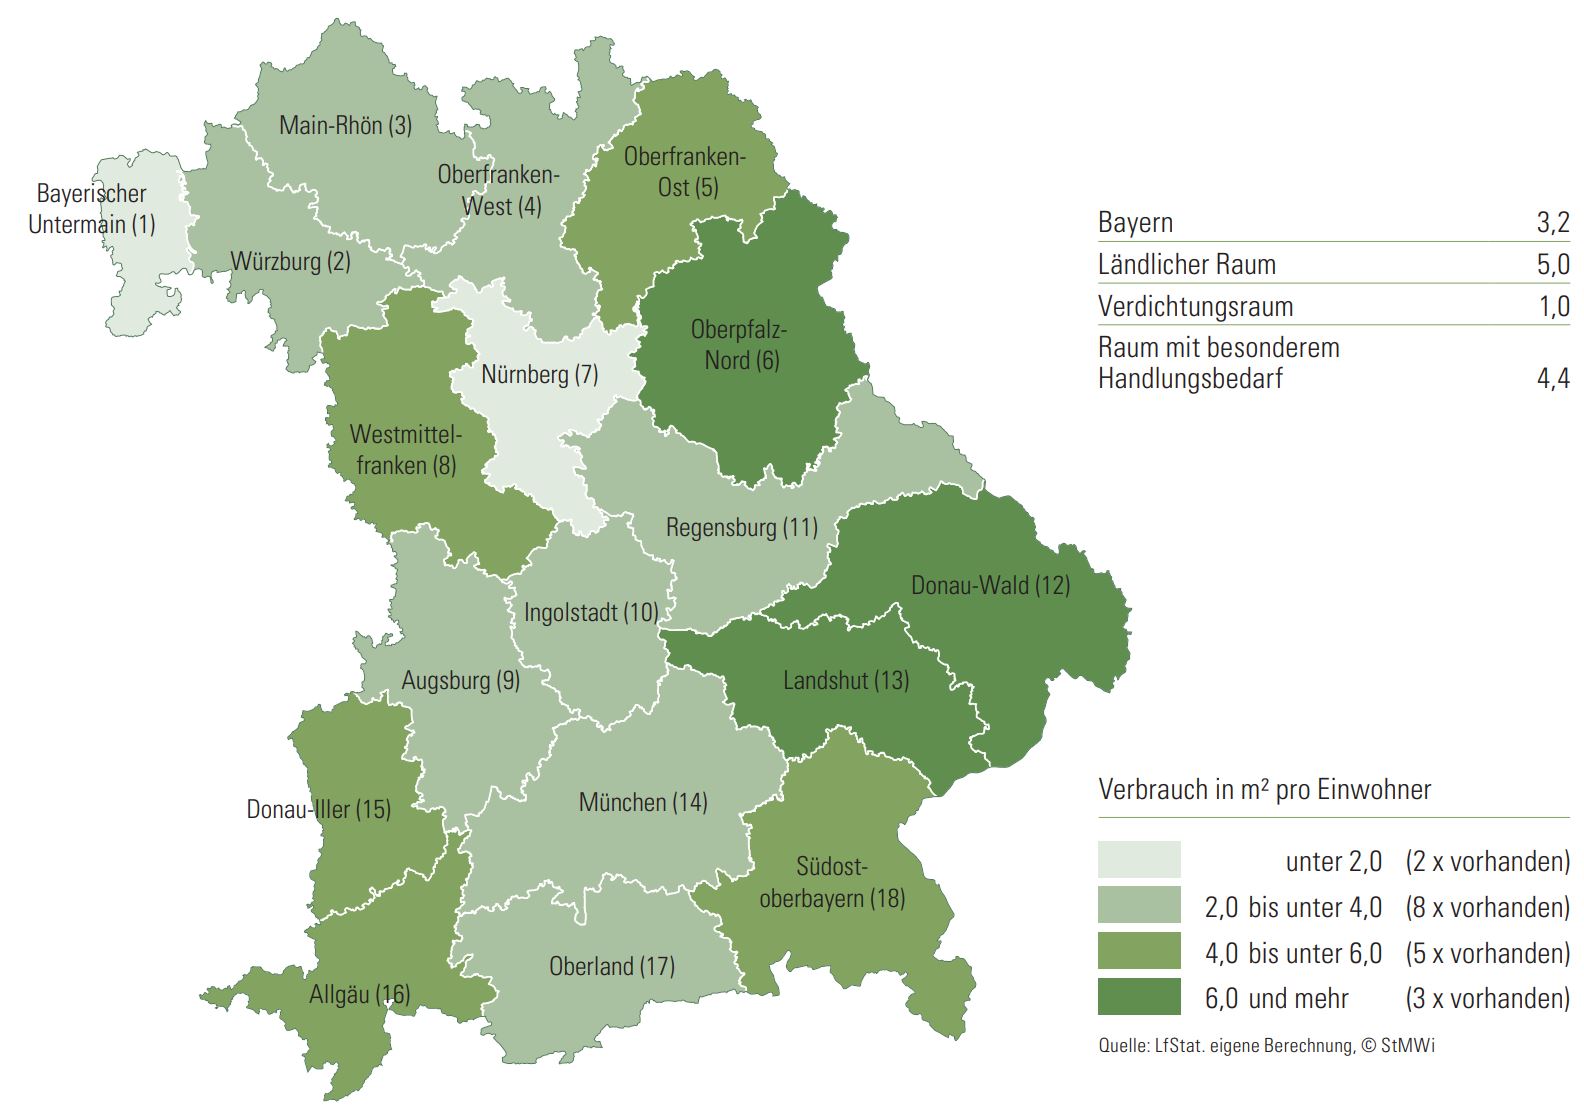 Flächenverbrauch pro Einwohner 2020 nach Regionen